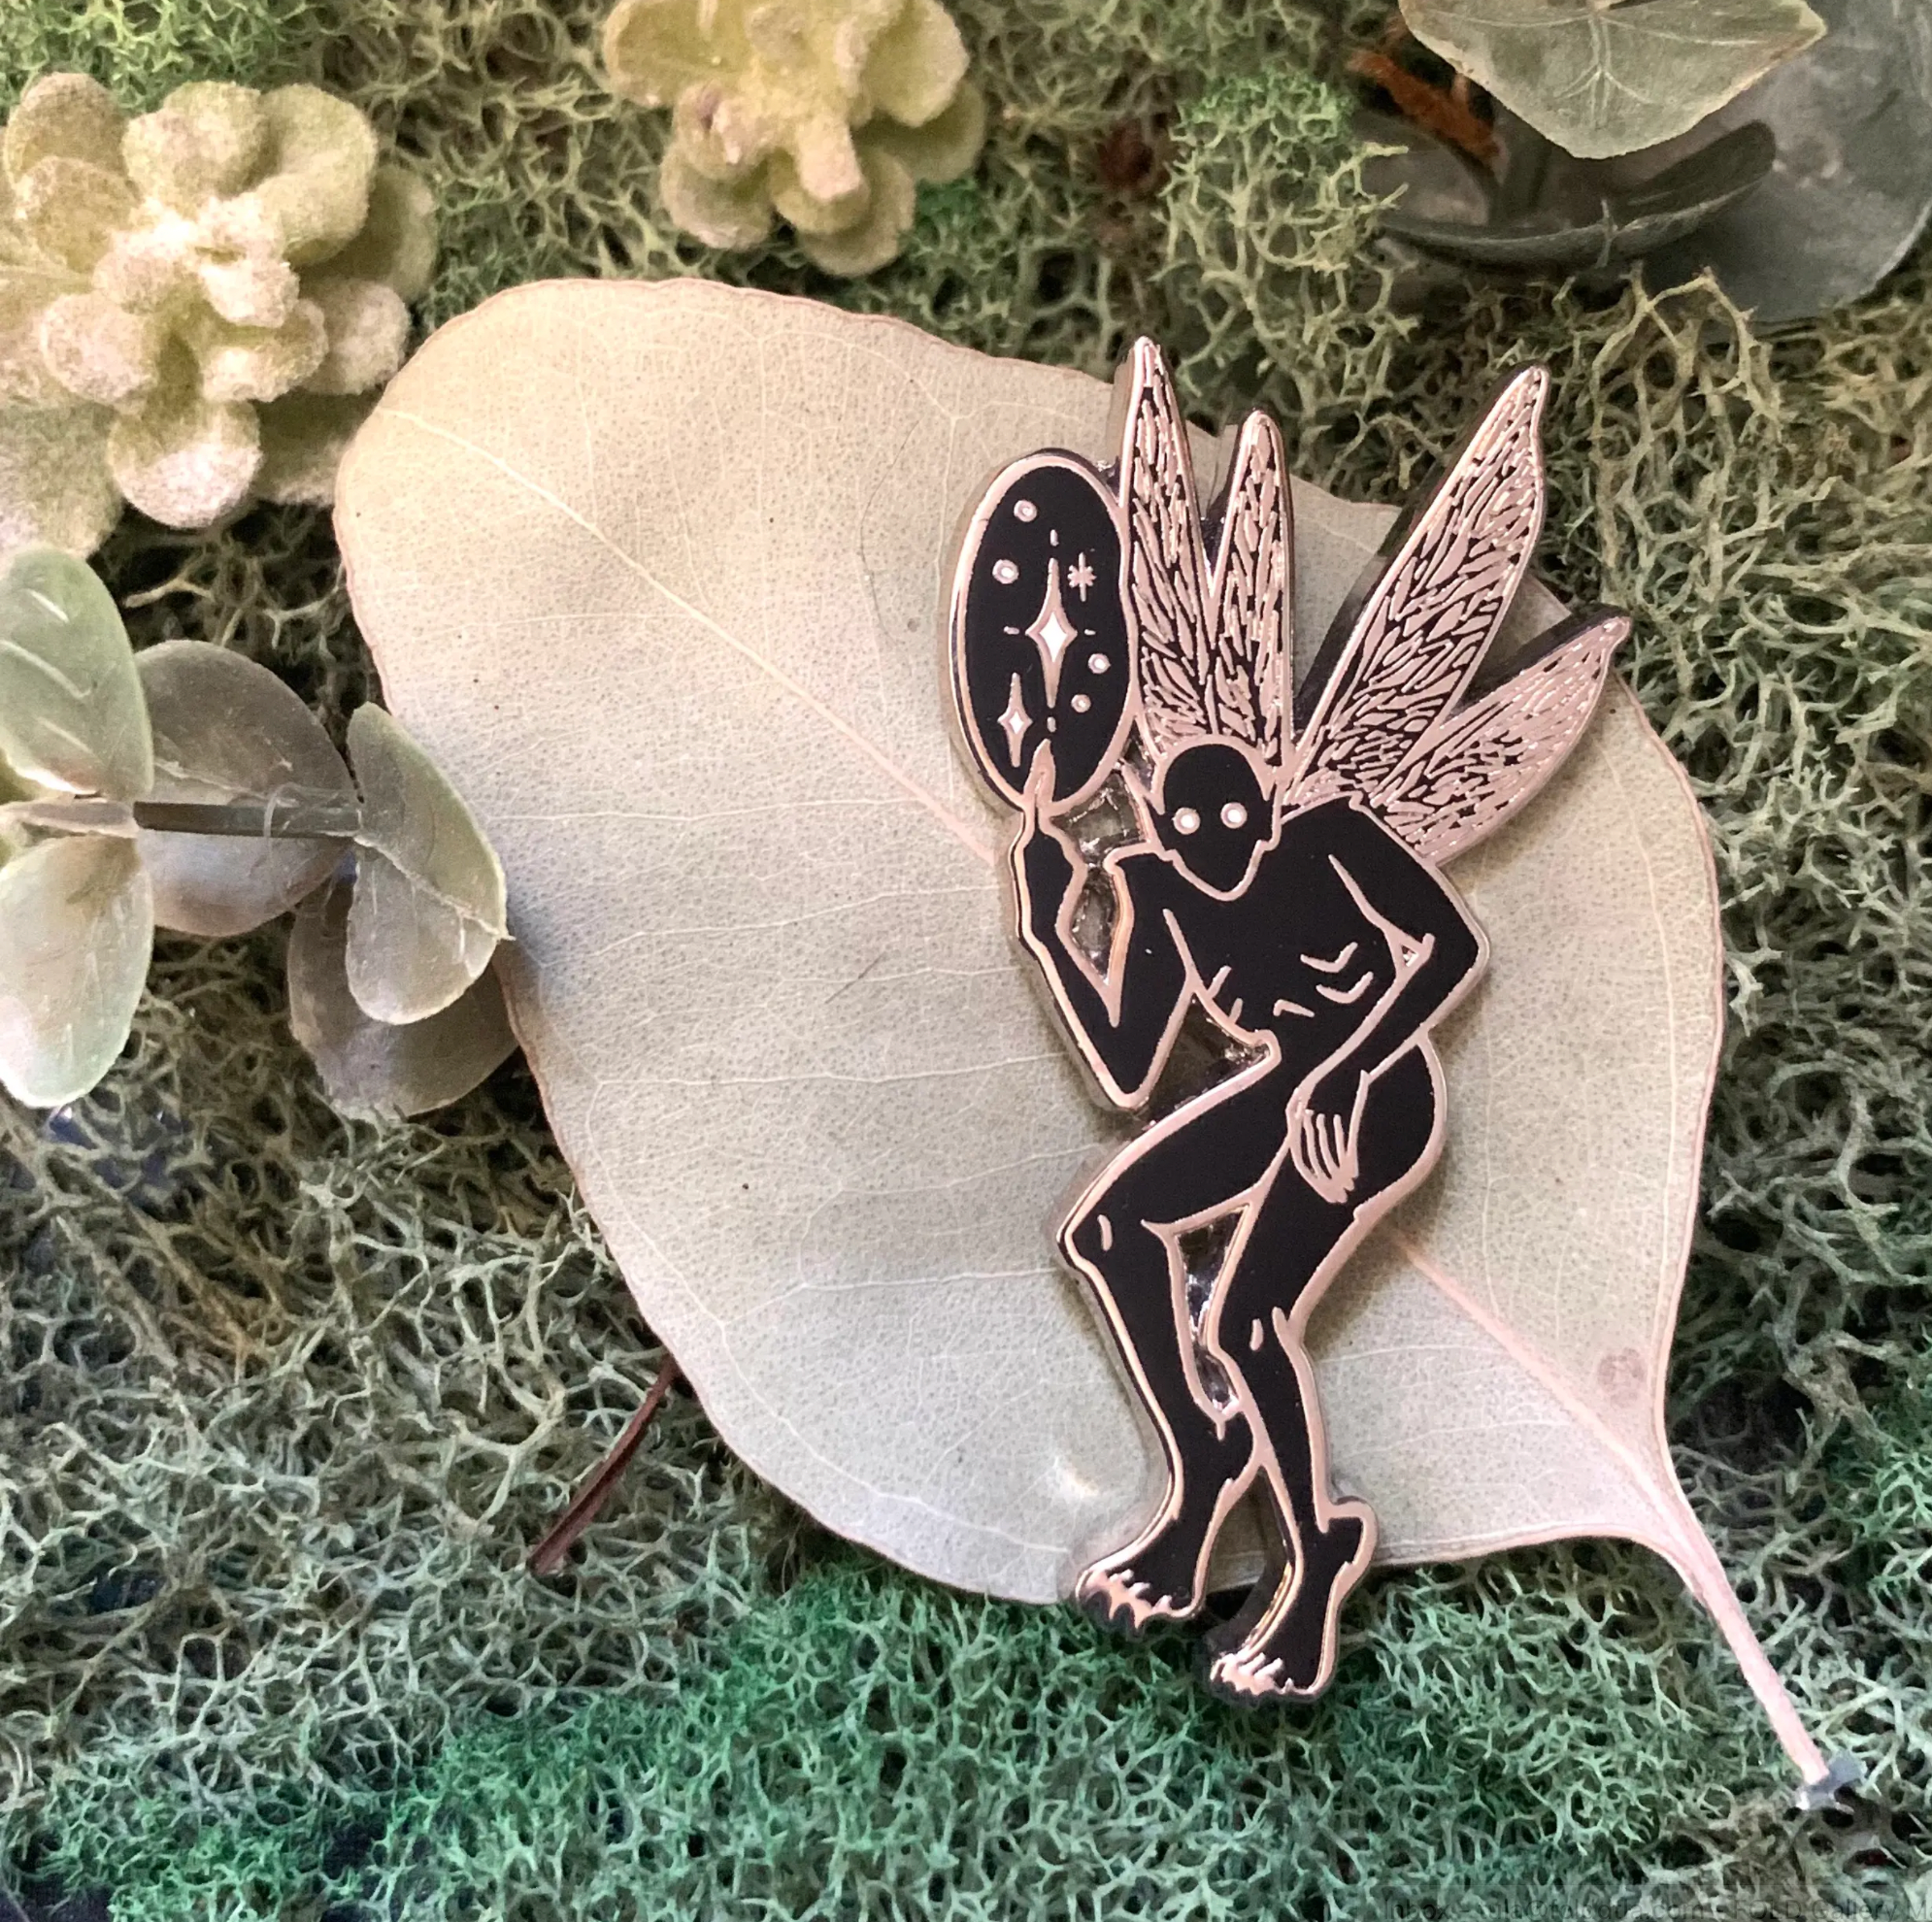 Pin on Fairy garden